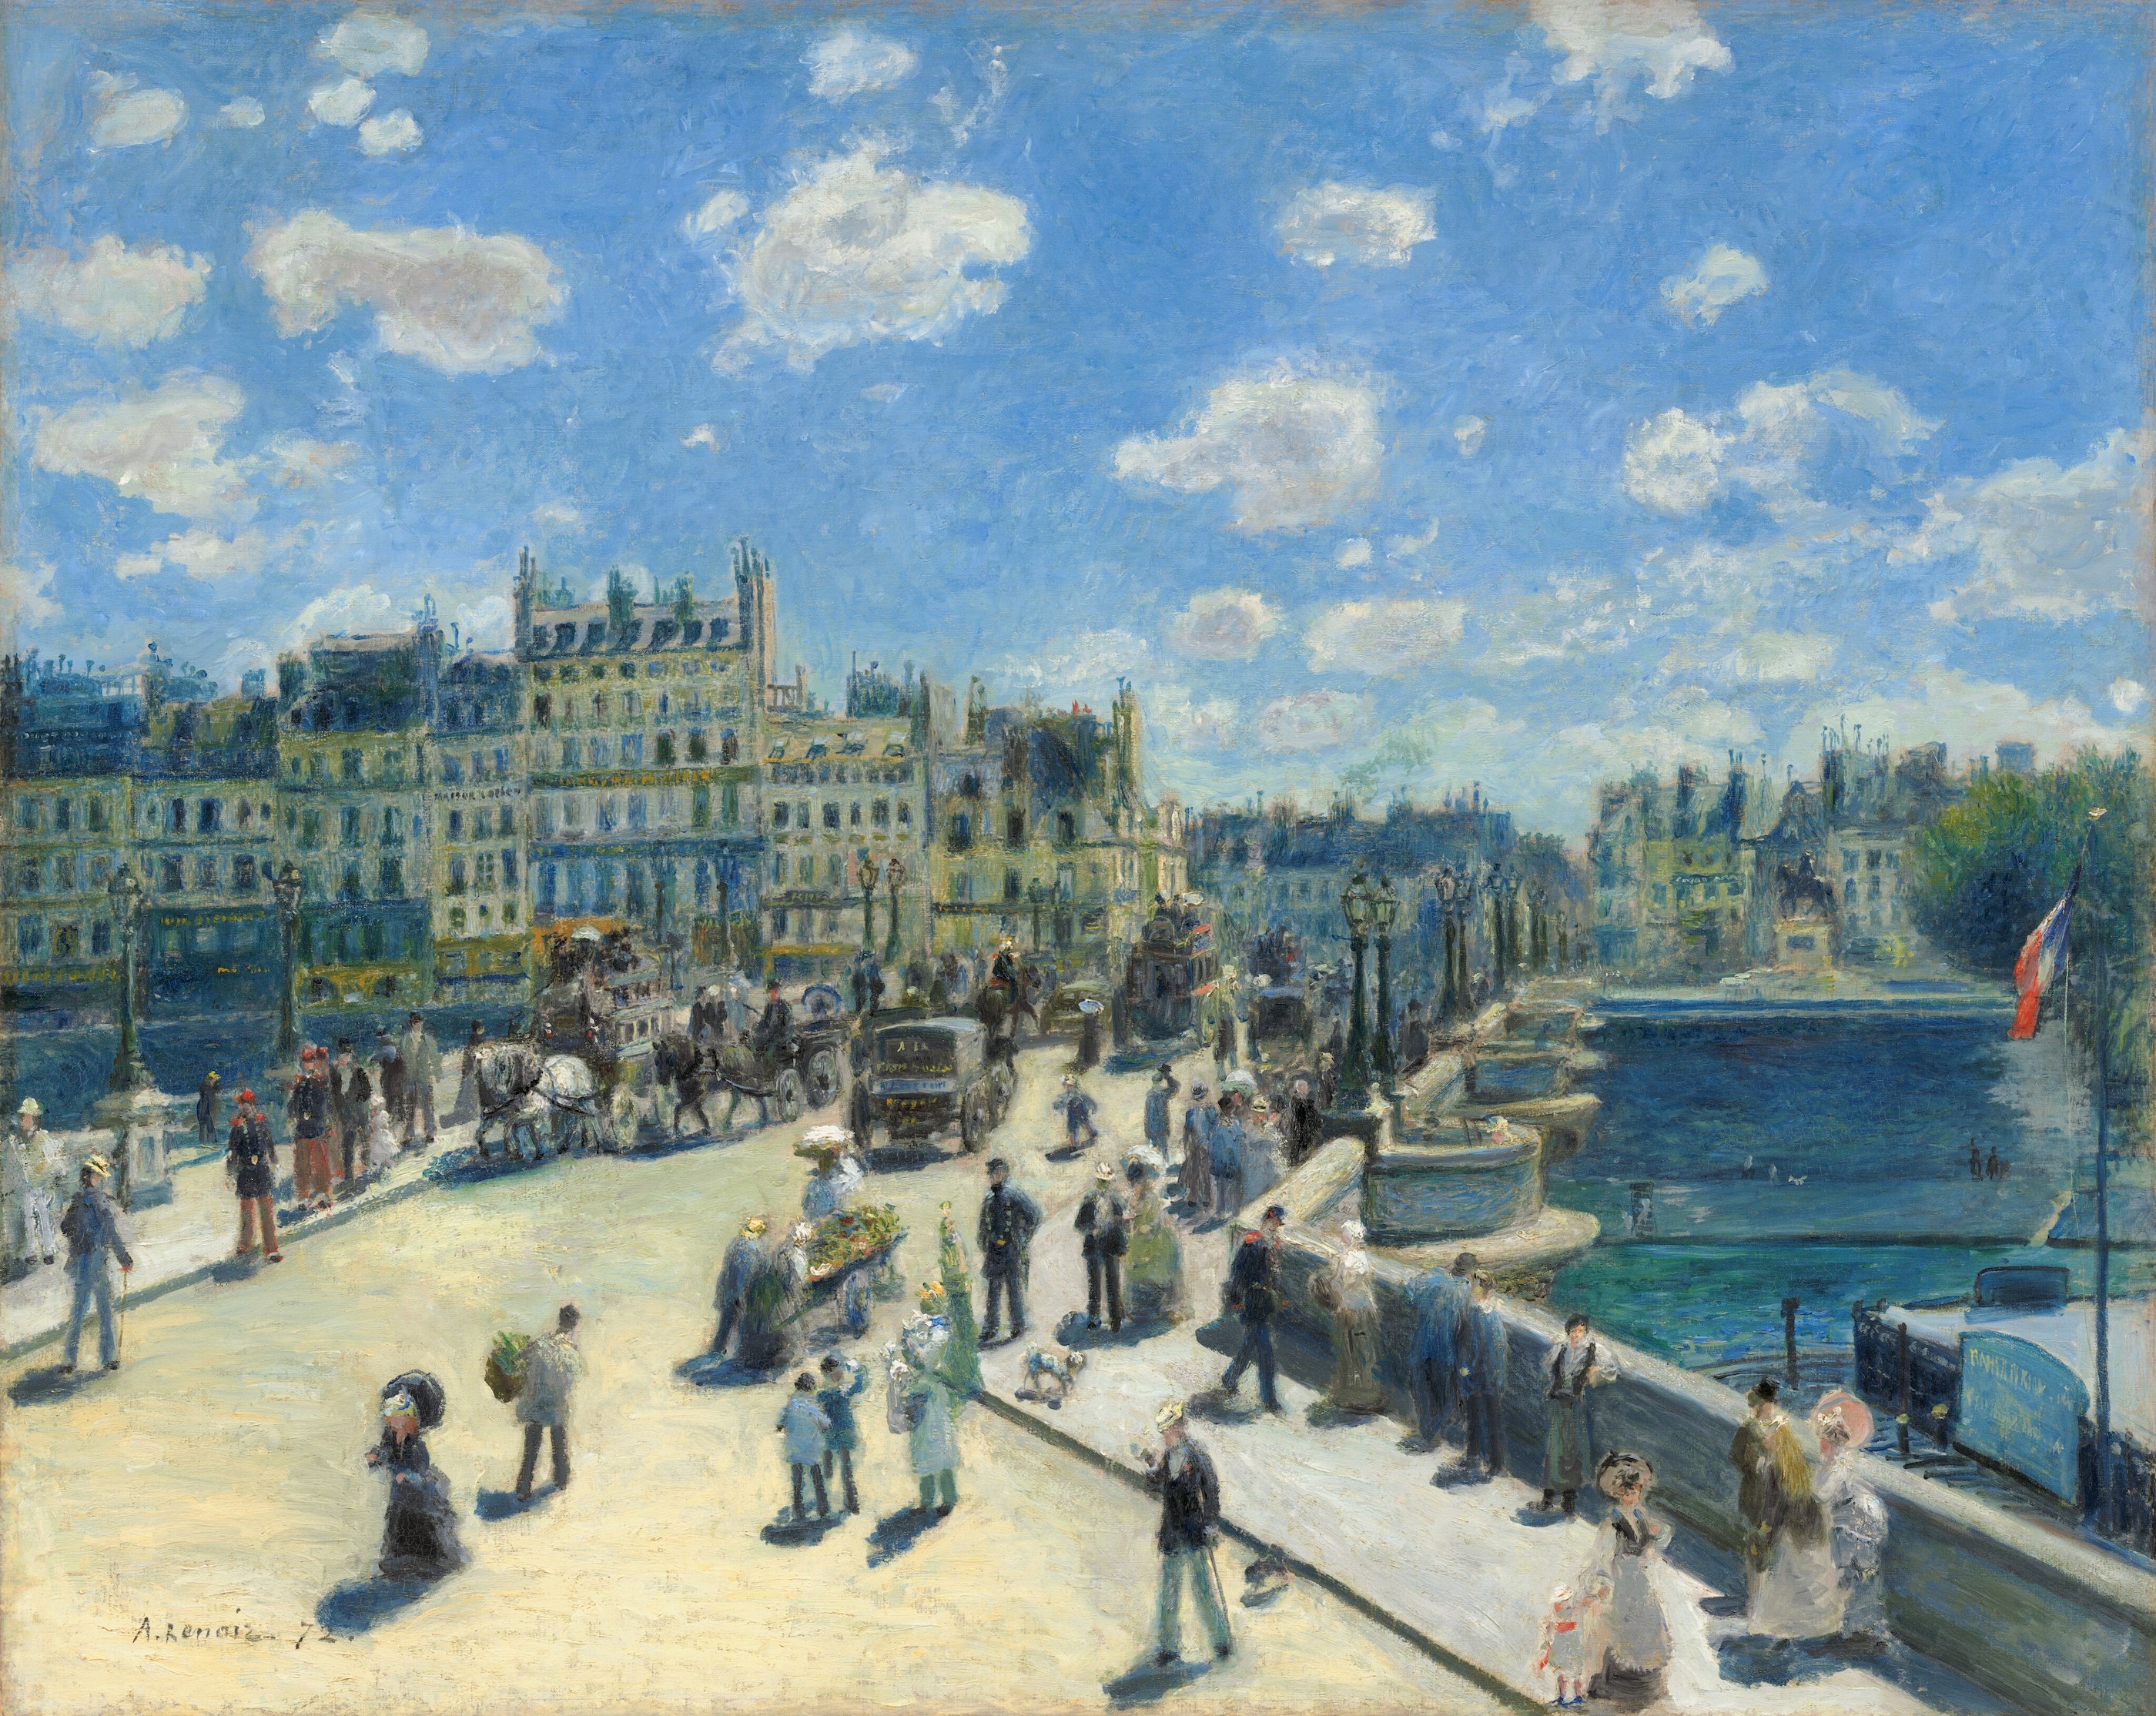 Puente Nuevo, París by Pierre-Auguste Renoir - 1872 - 75.3 x 93.7 cm National Gallery of Art